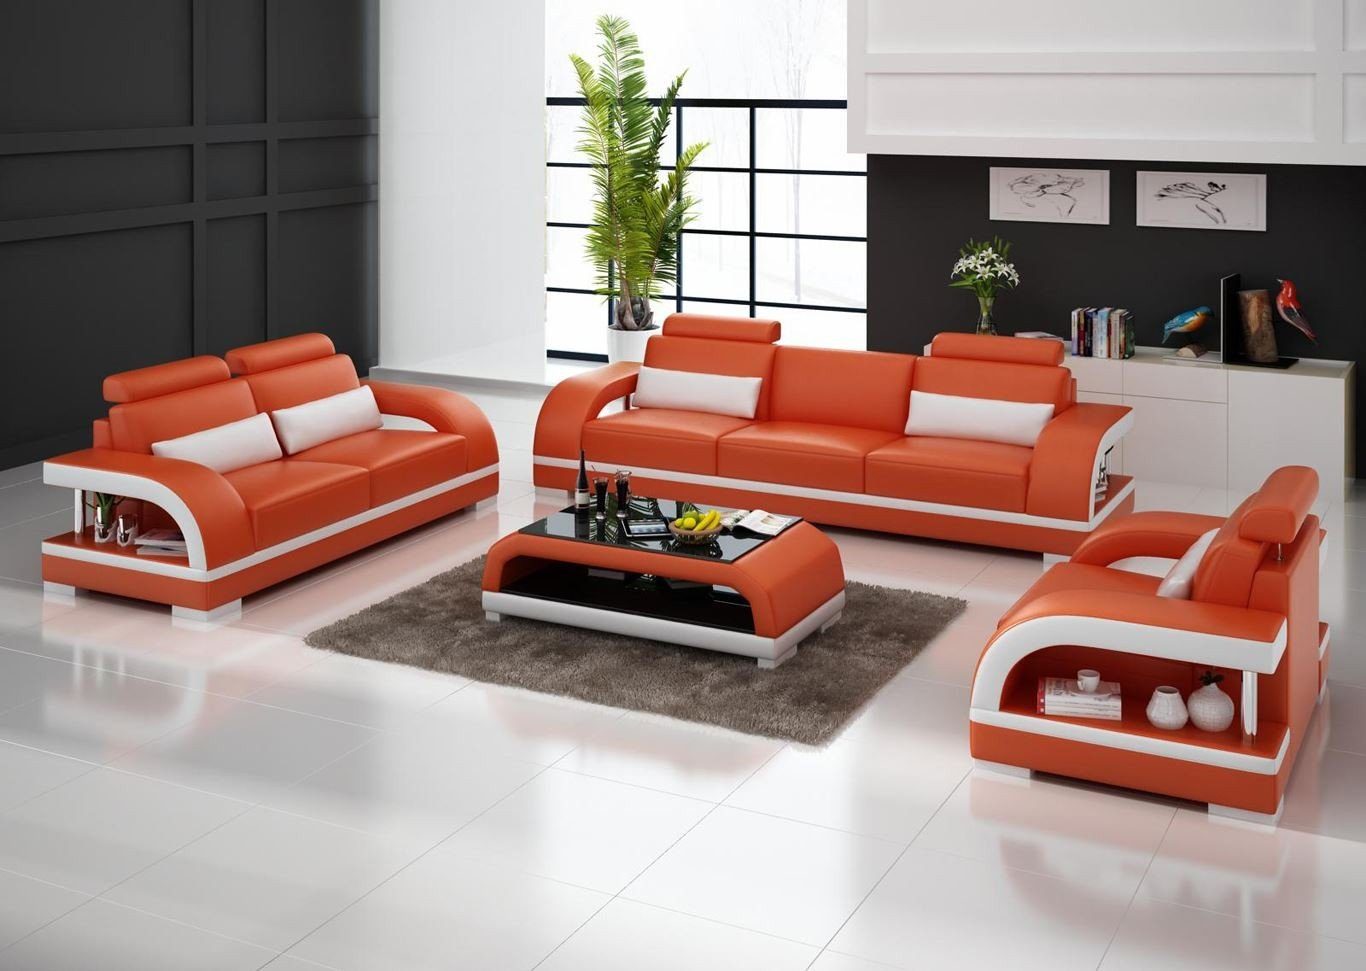 JVmoebel Sofa Moderne Weiße 3+2+1 Sogarnitur Luxus Polstermöbel Garnitur Neu, Made in Europe Orange